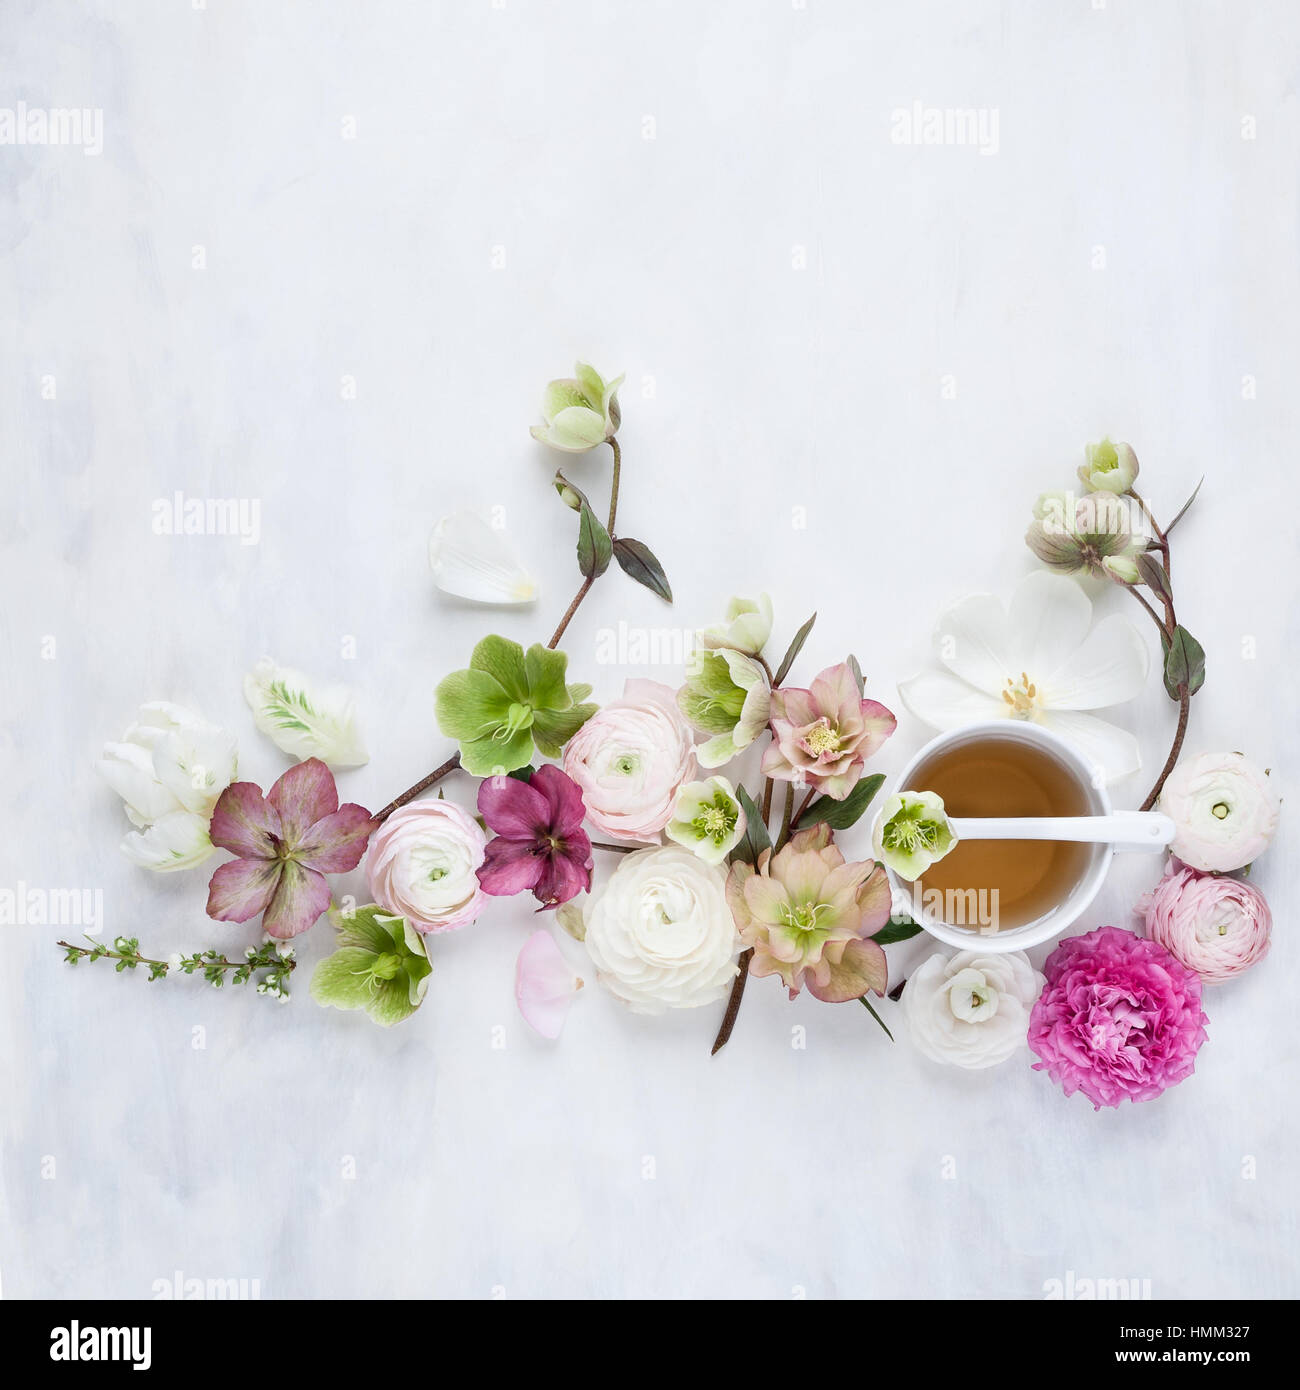 Vista de la vida fija plana desde arriba de las hellebores y flores de primavera dispuestas alrededor de una taza de té Foto de stock